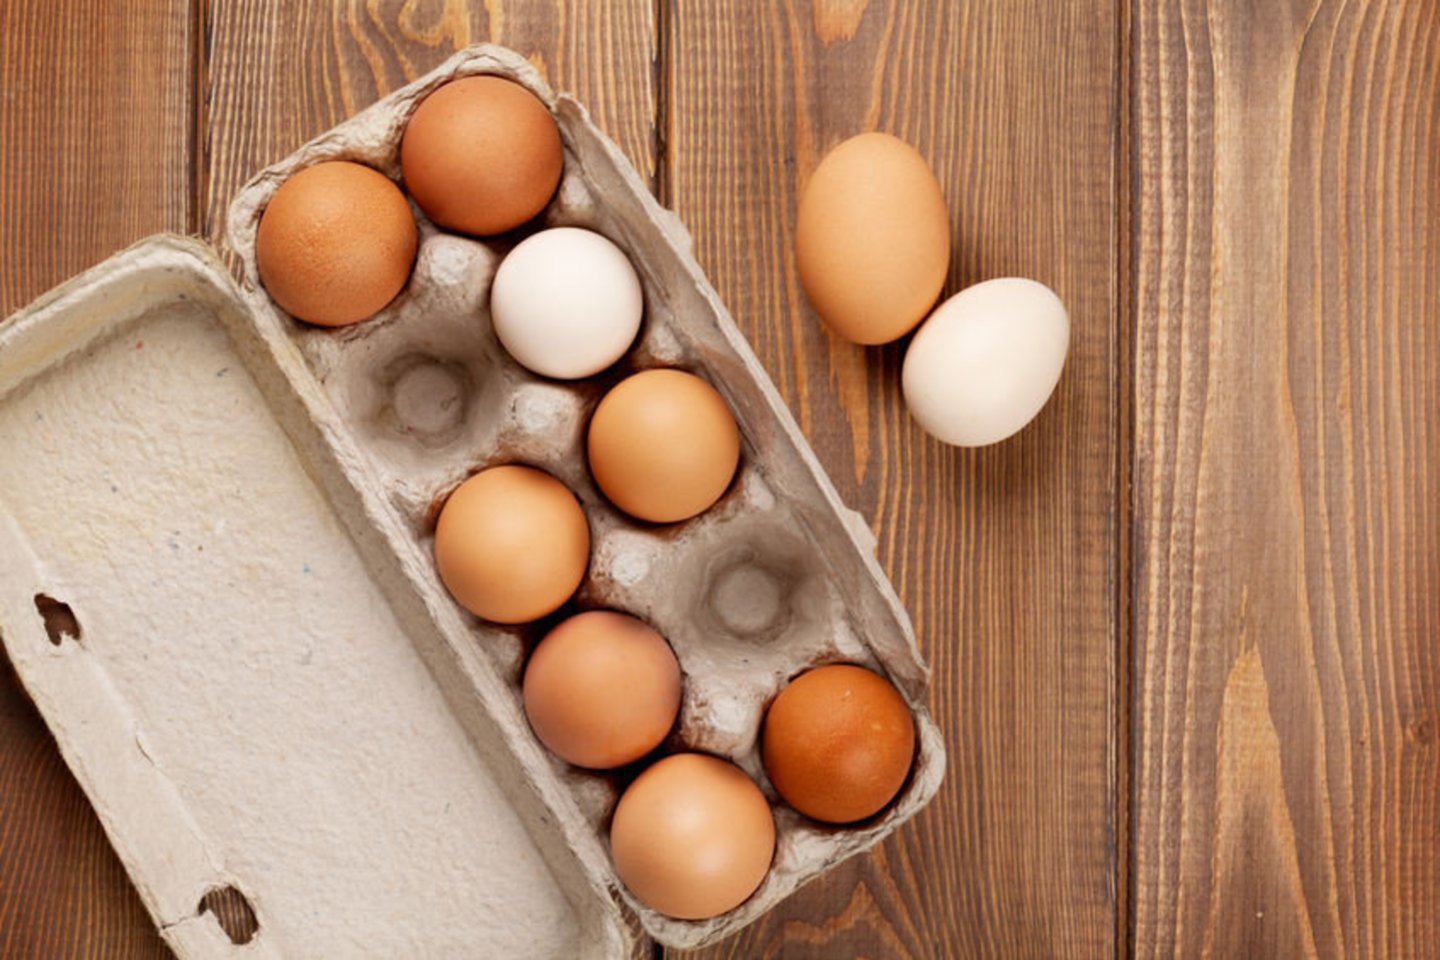 Tarp lietuvių vis dar populiariausi narvuose laikomi vištų kiaušiniai, bet po kelerių metų jų lentynose tiesiog nebeliks.<br>123rf nuotr.